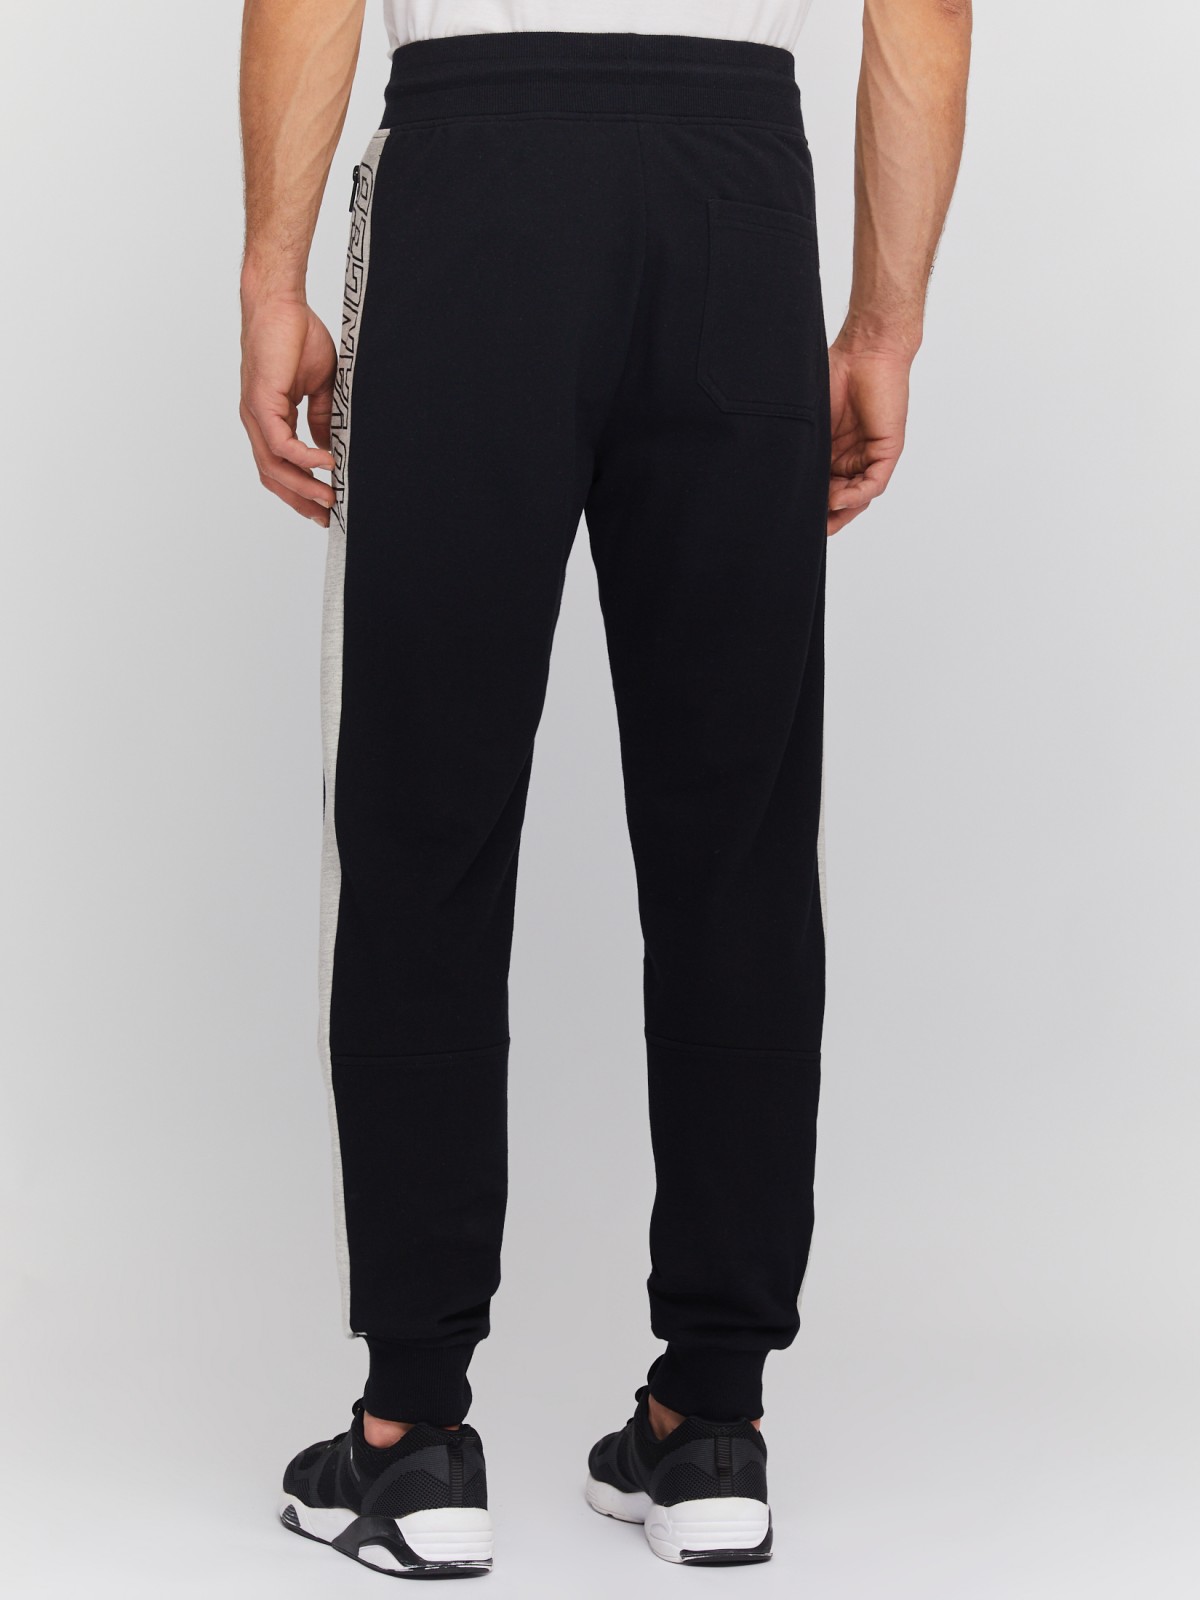 Трикотажные брюки-джоггеры с лампасами zolla 014137660061, цвет черный, размер S - фото 6